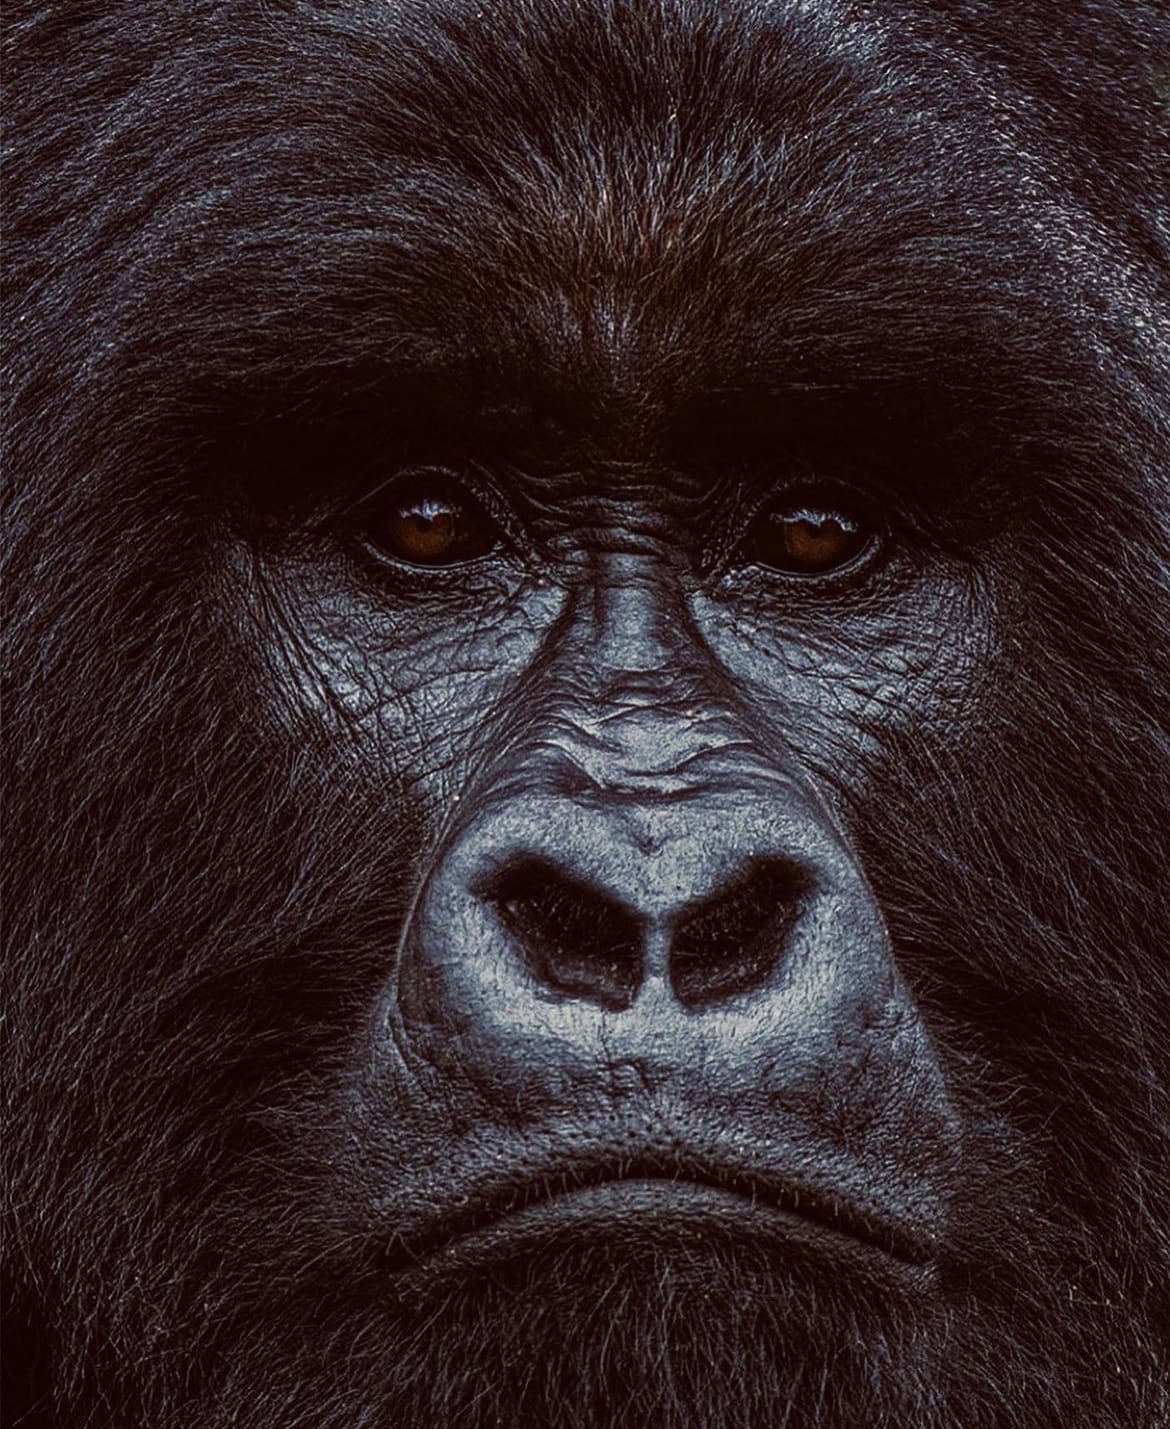 Mountain gorilla closeup